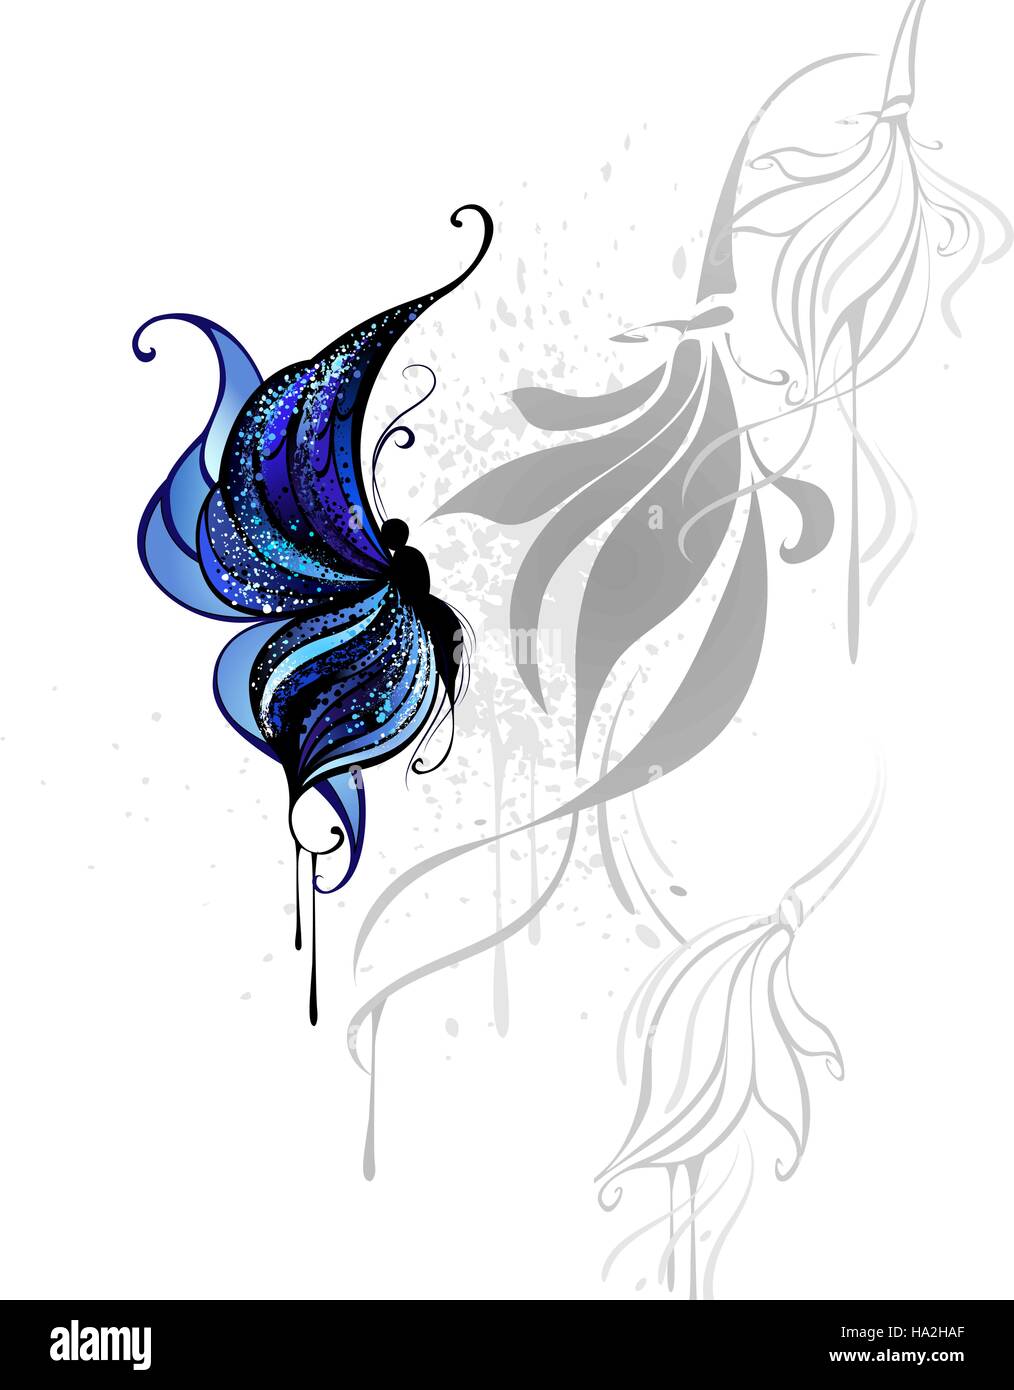 Schmetterling mit dunkel blauen und schwarzen Farbe auf weißem Hintergrund mit den grauen stilisierten Blumen gezeichnet. Stock Vektor